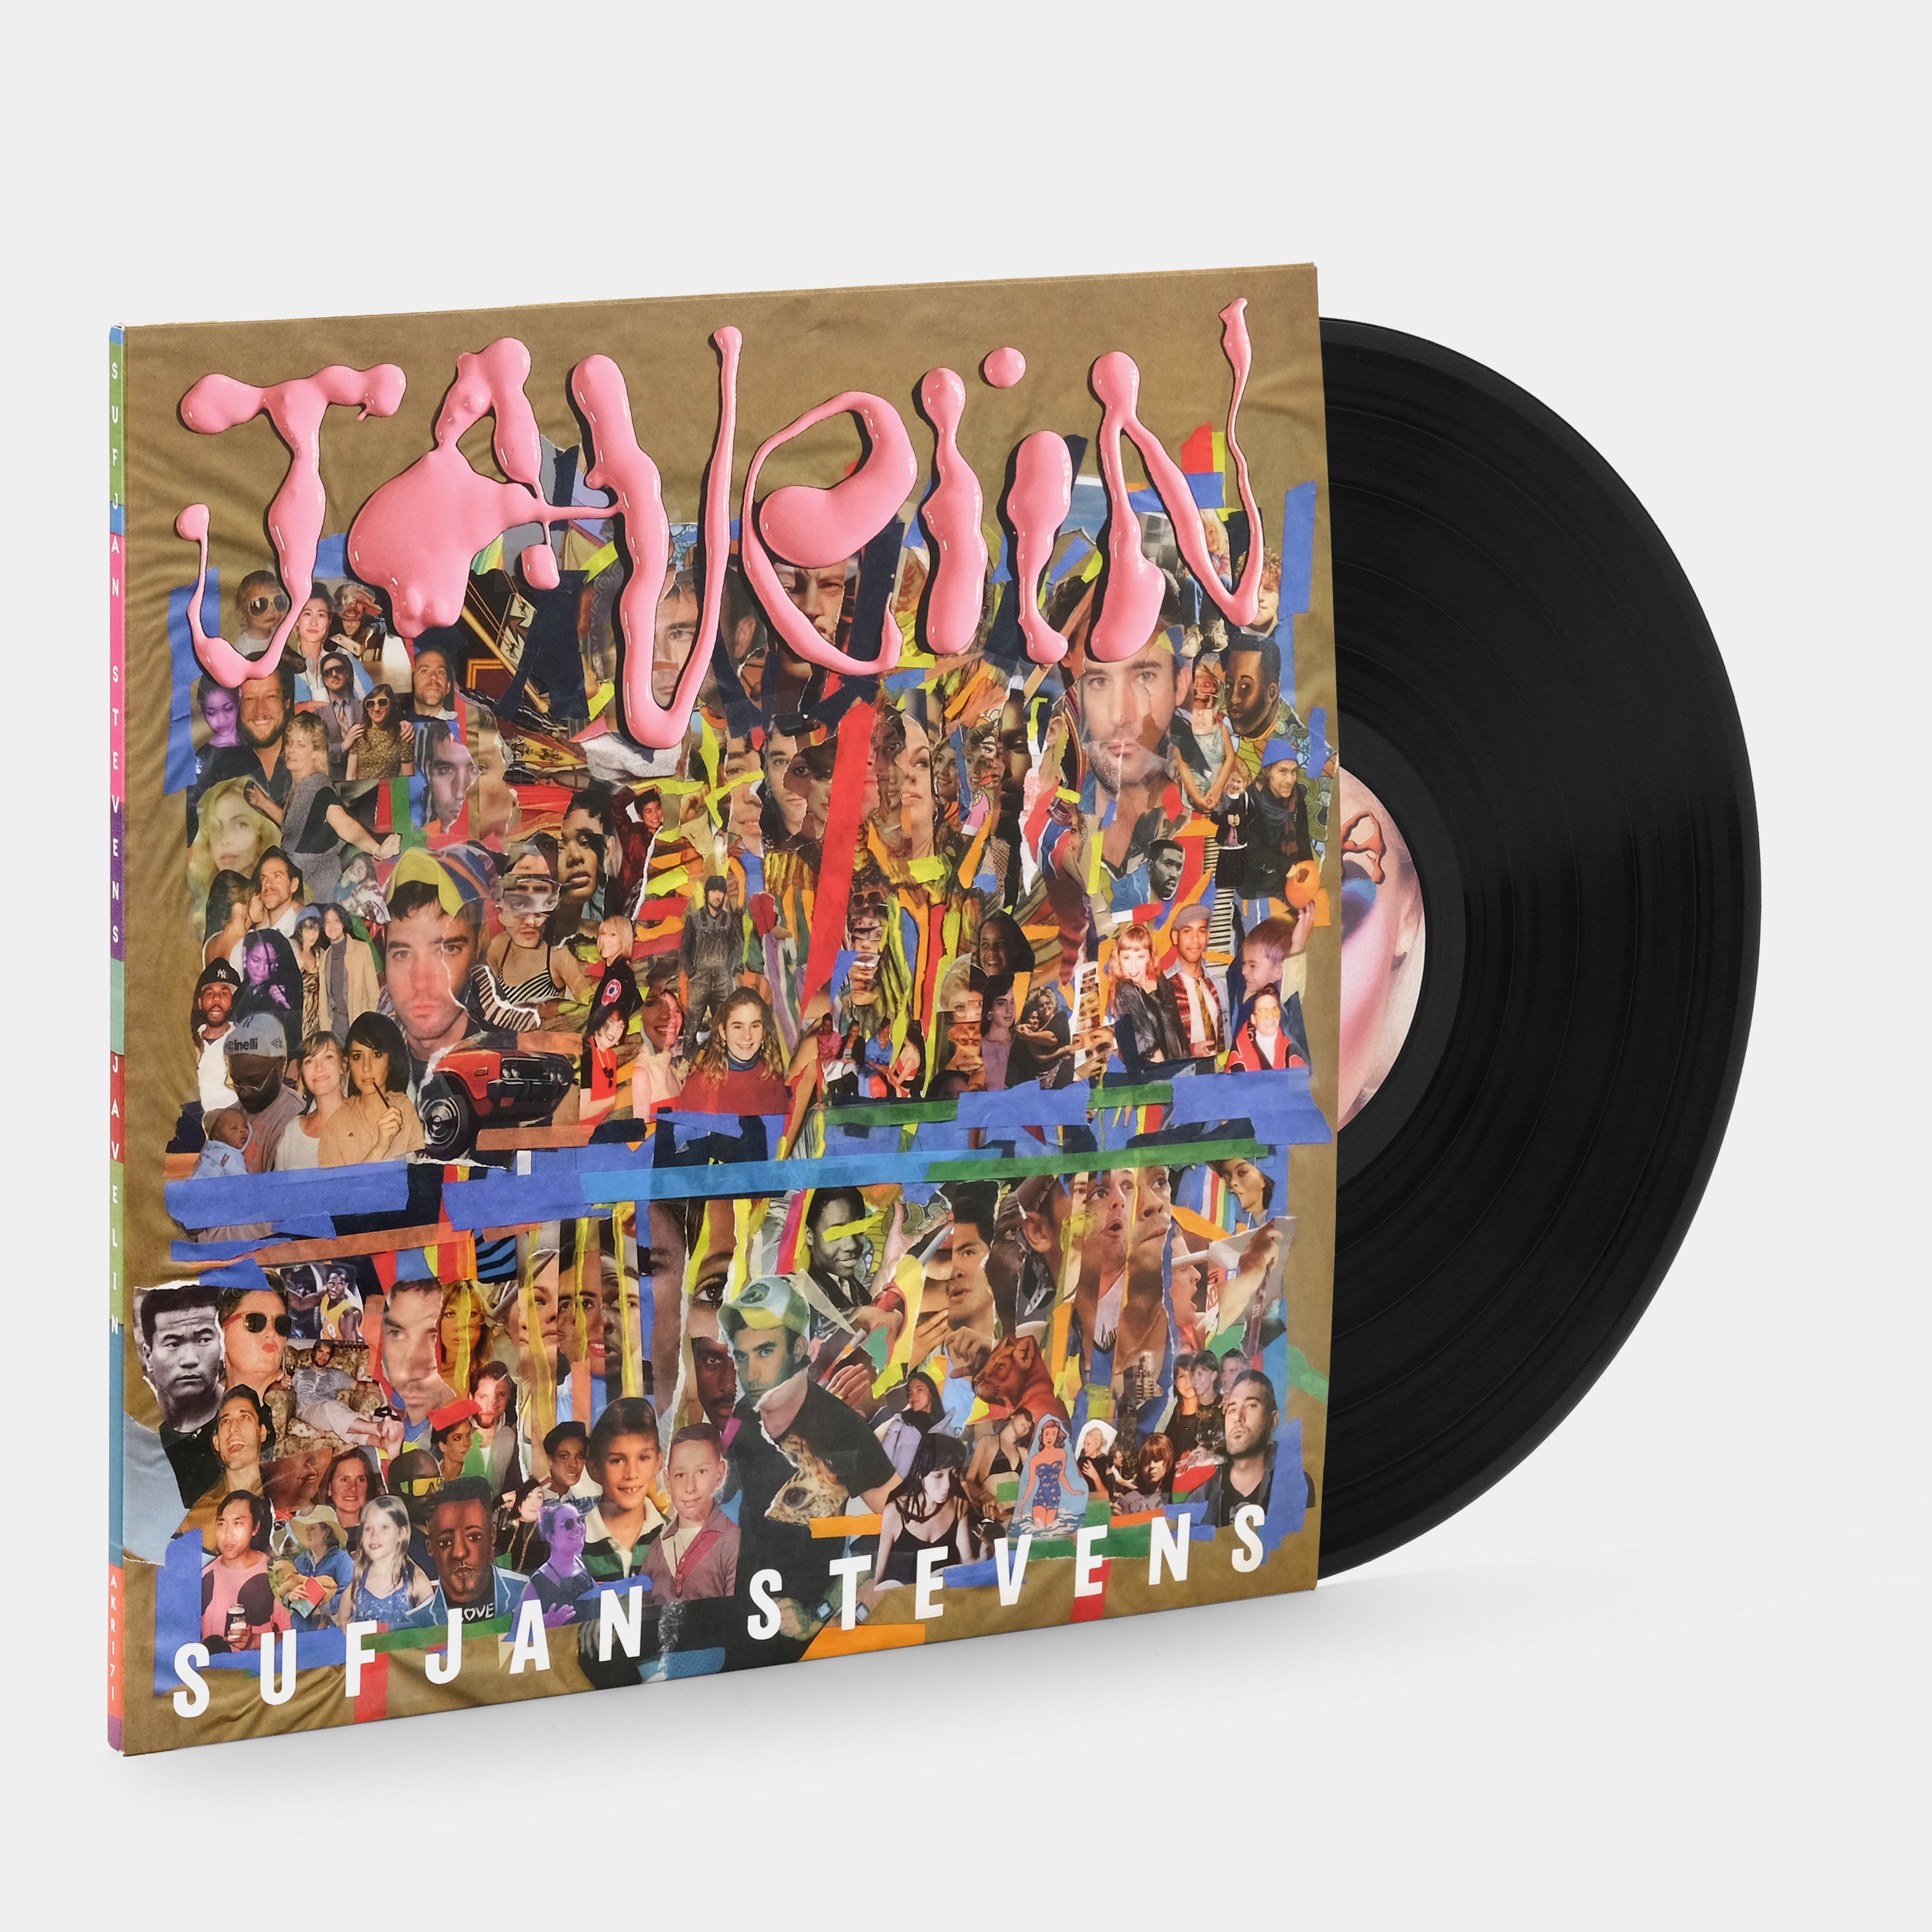 Sufjan Stevens - Javelin LP Vinyl Record